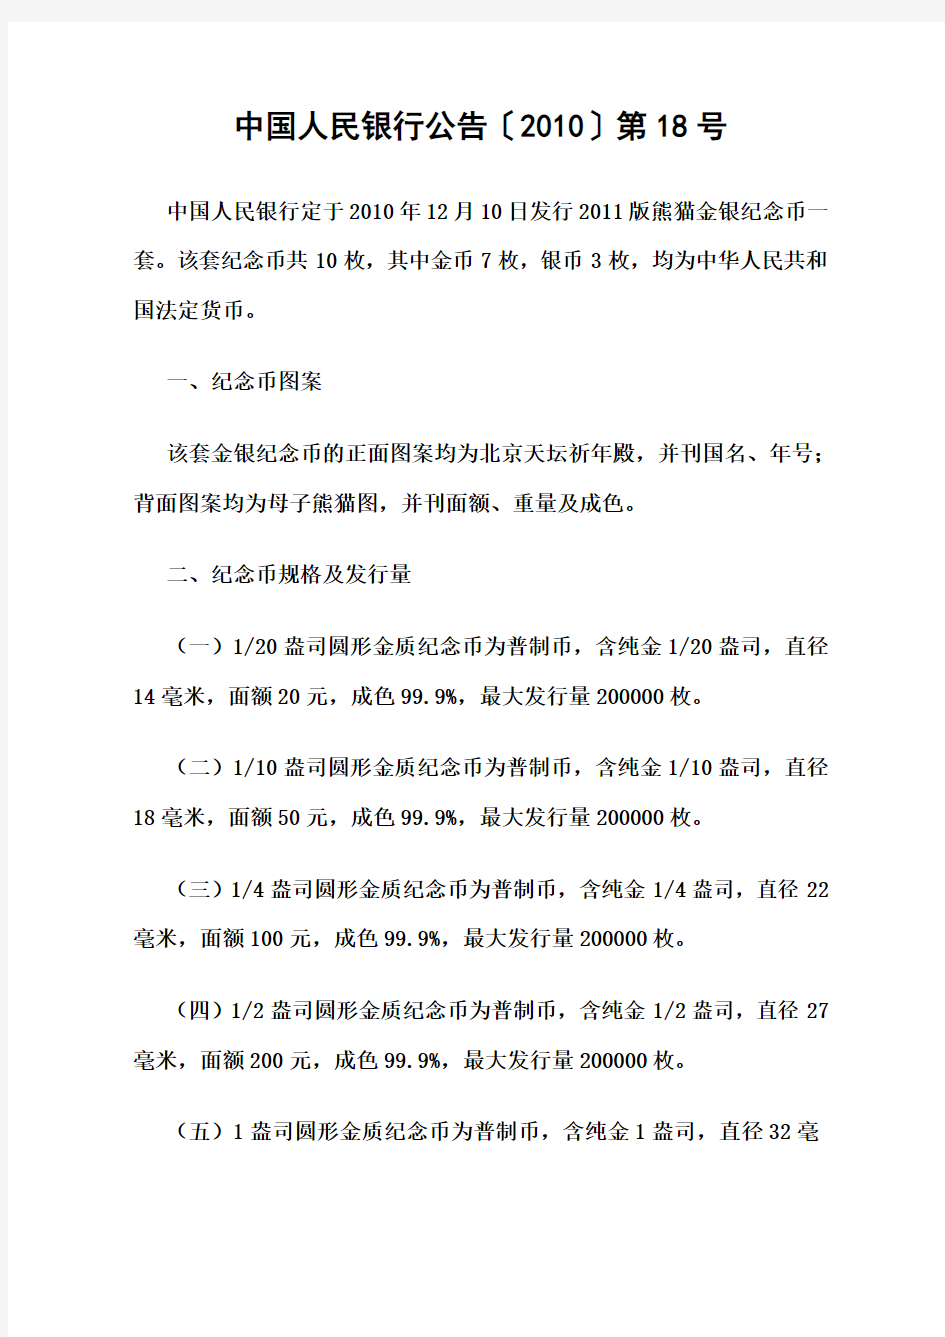 中国人民银行公告〔2010〕第18号——2011版熊猫金银纪念币发行